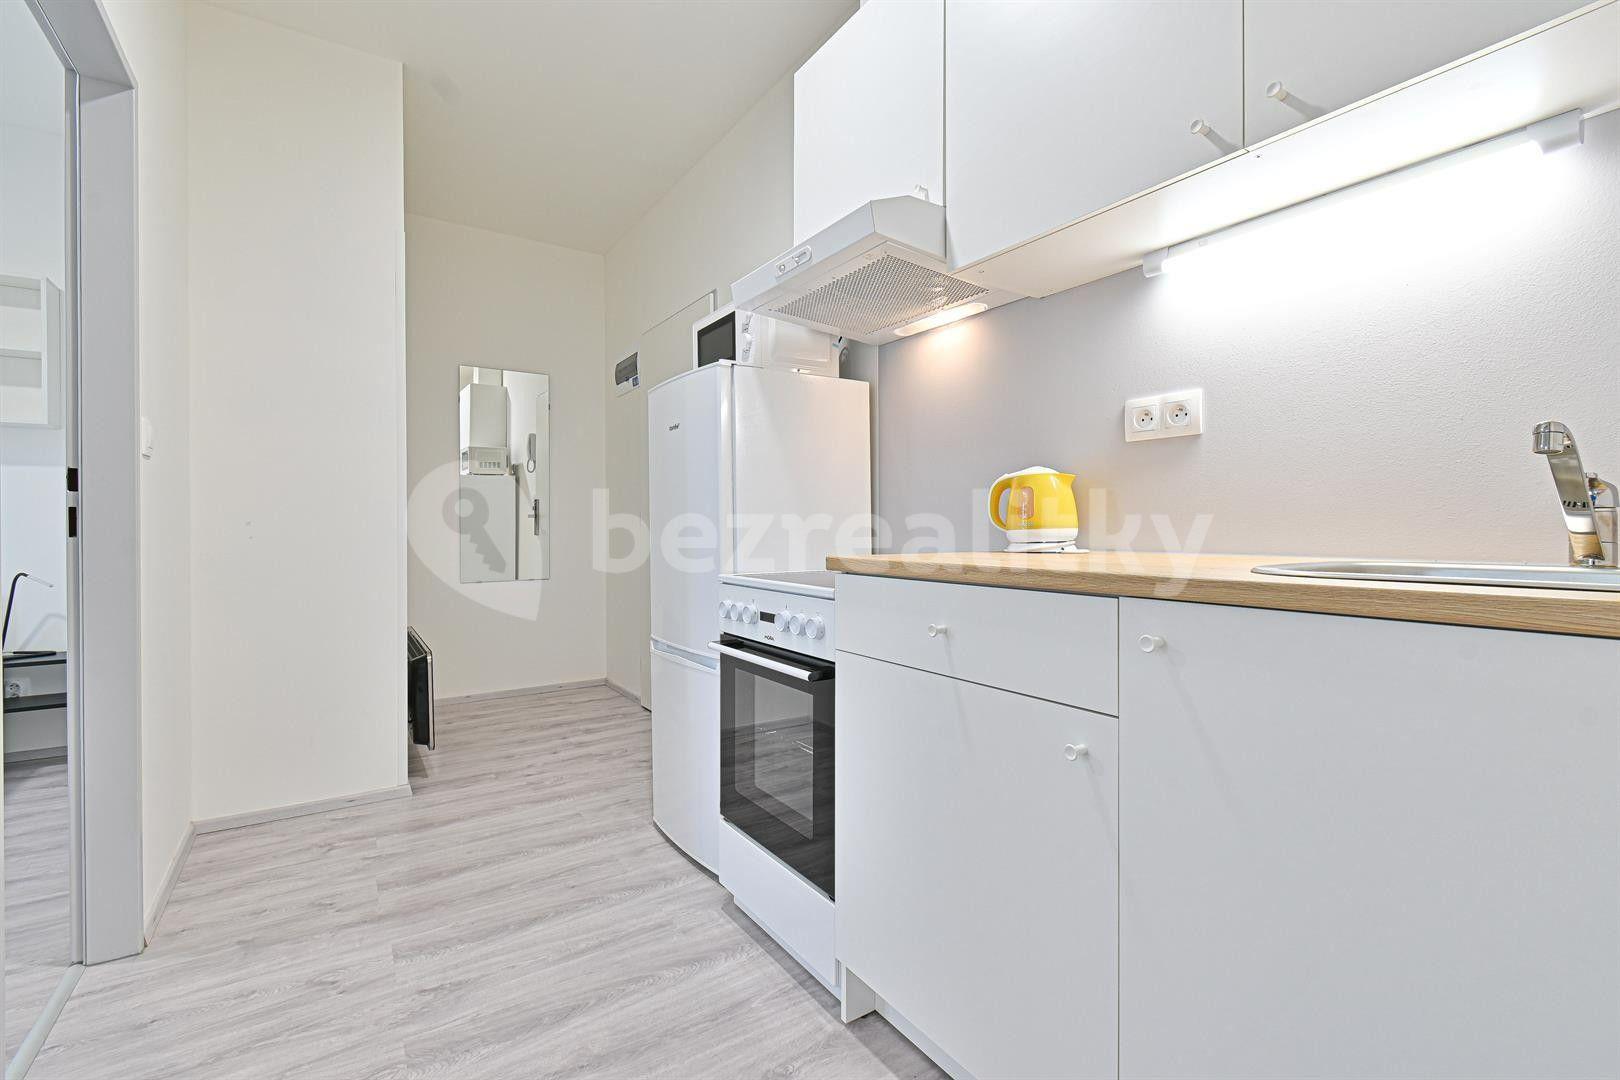 2 bedroom flat to rent, 33 m², Hybešova, Brno, Jihomoravský Region